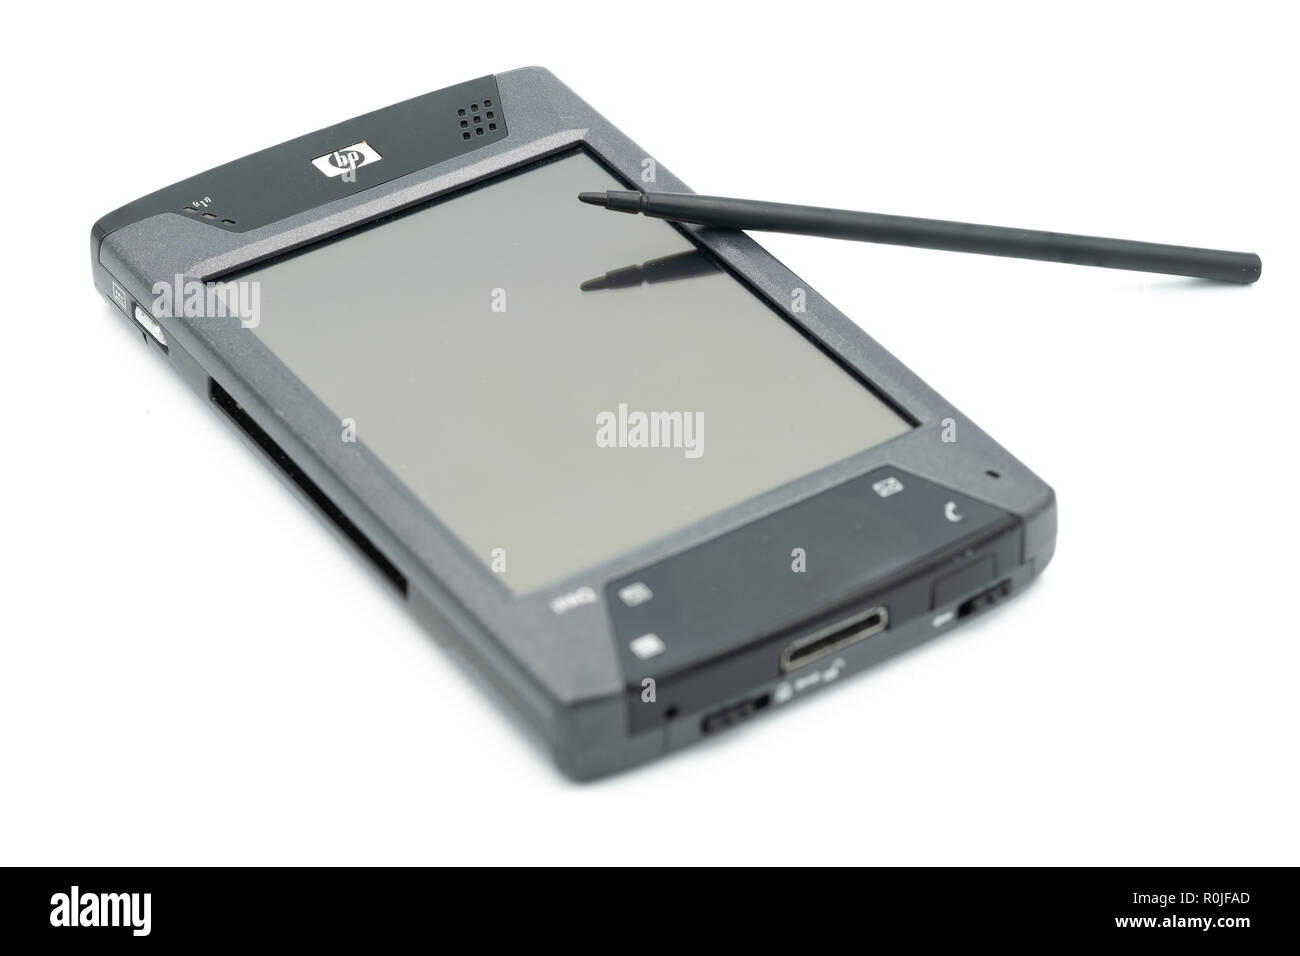 HP iPaq hx4700 PDA con stilo Foto Stock